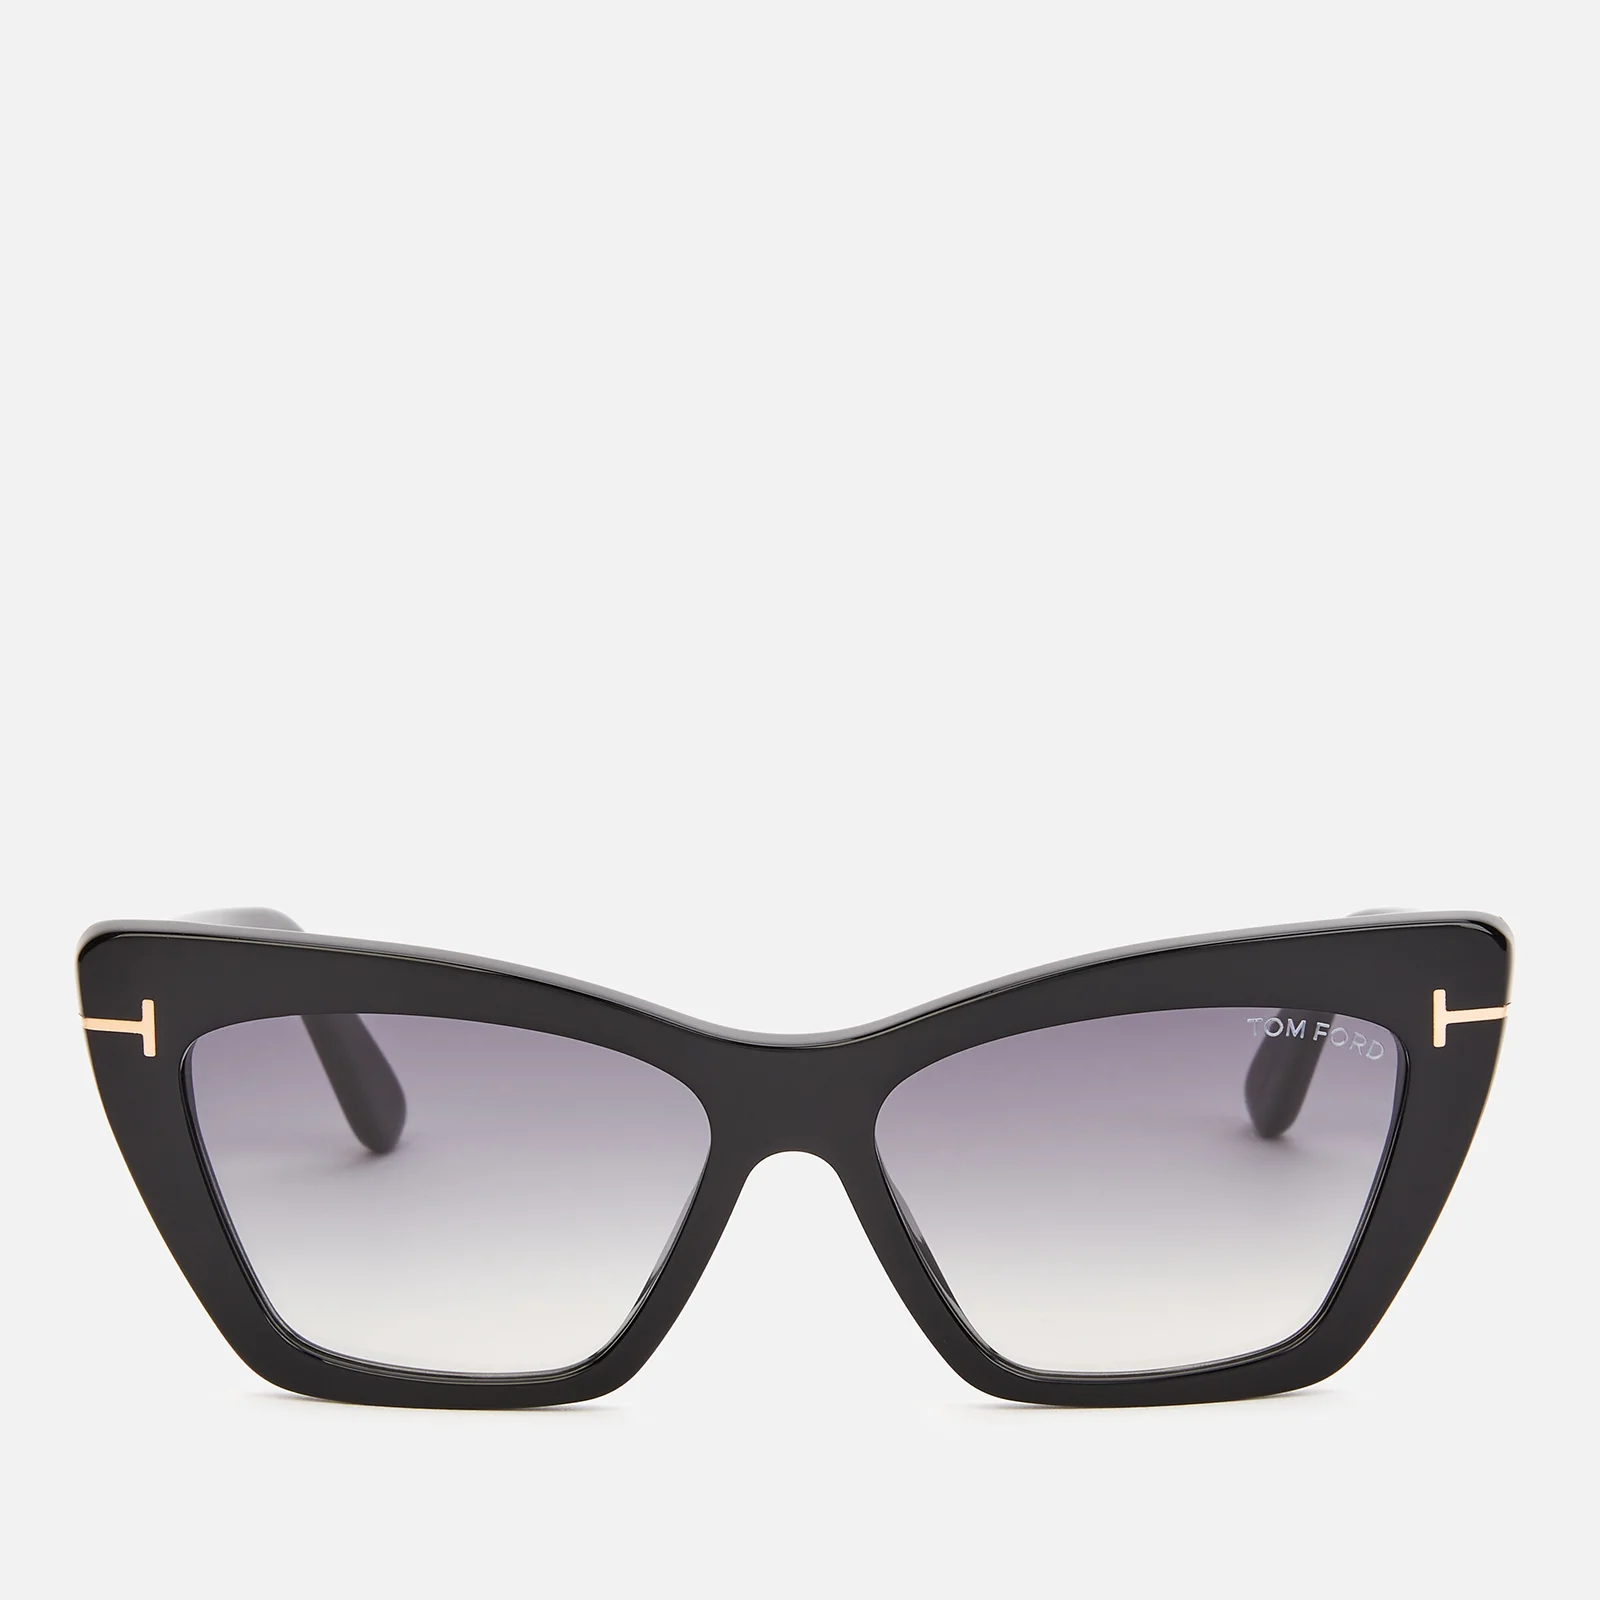 Tom Ford Women's Wyatt Cat Frame Sunglasses - Black/Smoke Image 1